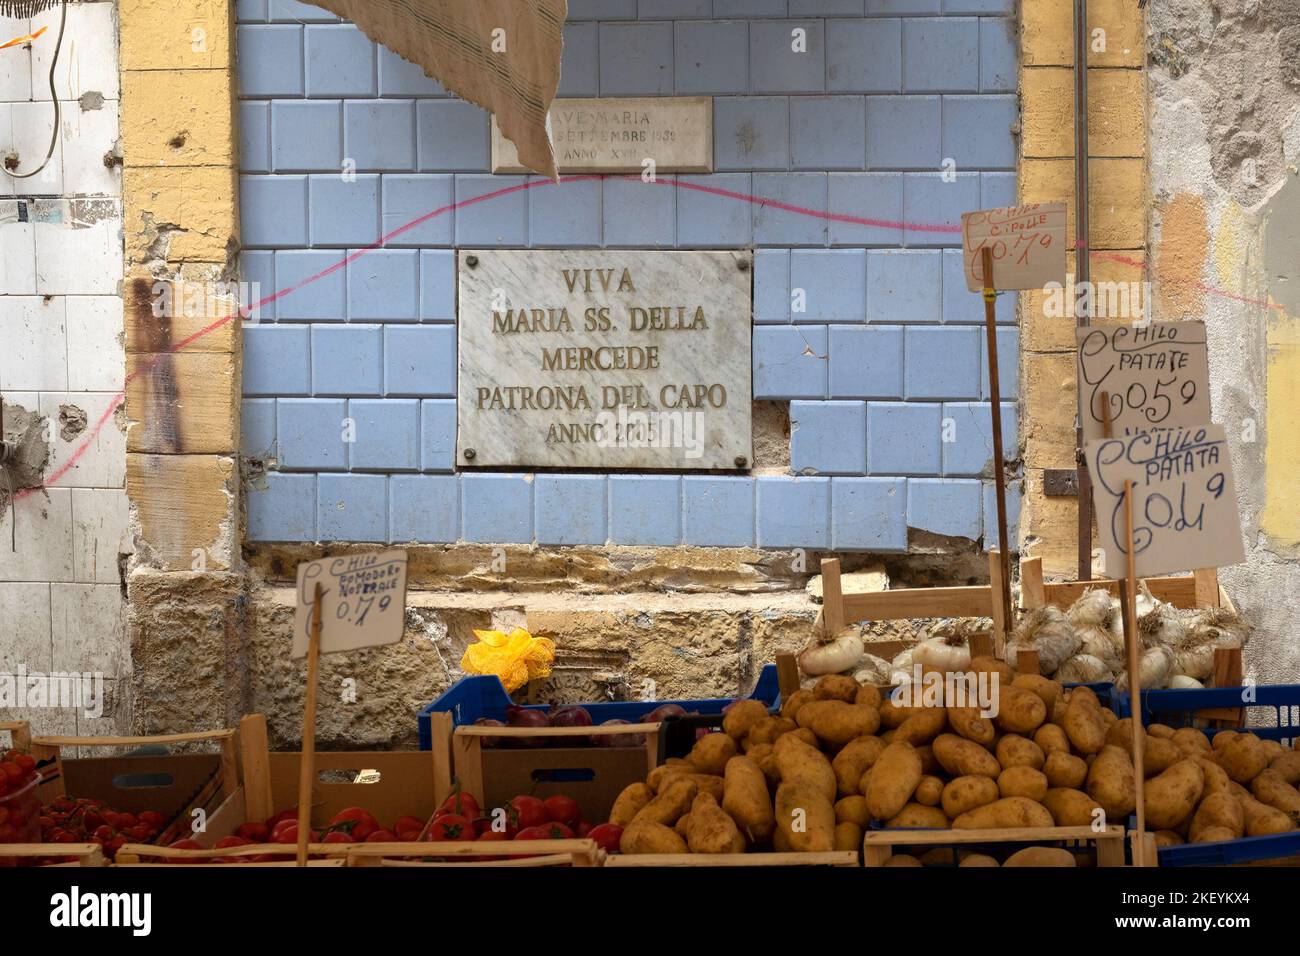 PALERMO, SICILIA, ITALIA - 21 DE MAYO de 2018: Pequeño establo de verduras en el mercado de La Vucciria con placa en honor a María Nuestra Señora de la Misericordia (Maria della Mercede) Foto de stock